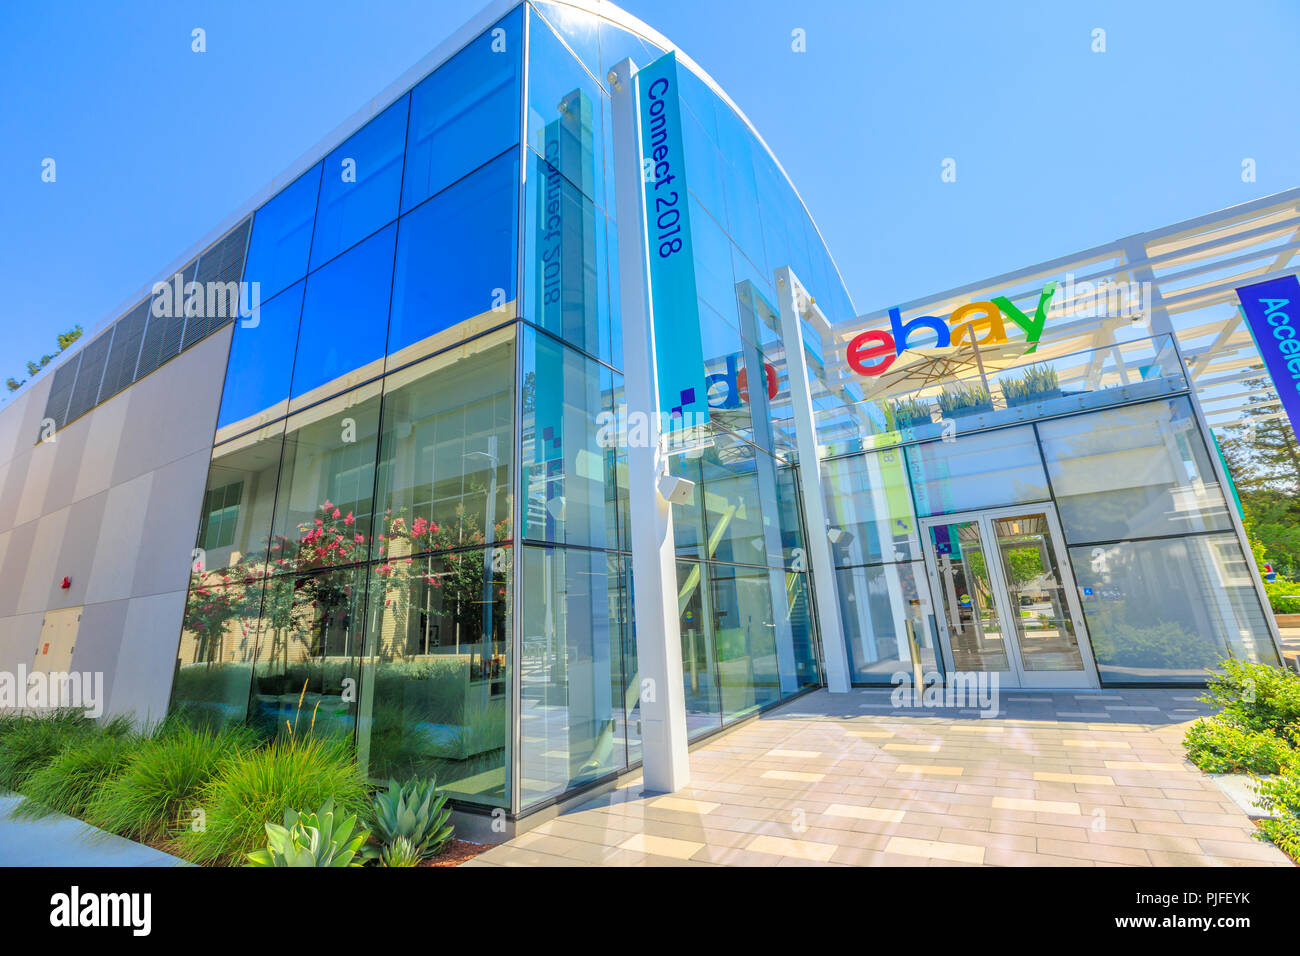 San Jose, Kalifornien, USA - 12. August 2018: ebay Hauptquartier und Campus in San Jose. eBay betreibt das größte Online Auktion Sehenswürdigkeiten der Welt und ist einer der größten globalen e-commerce Unternehmen. Stockfoto